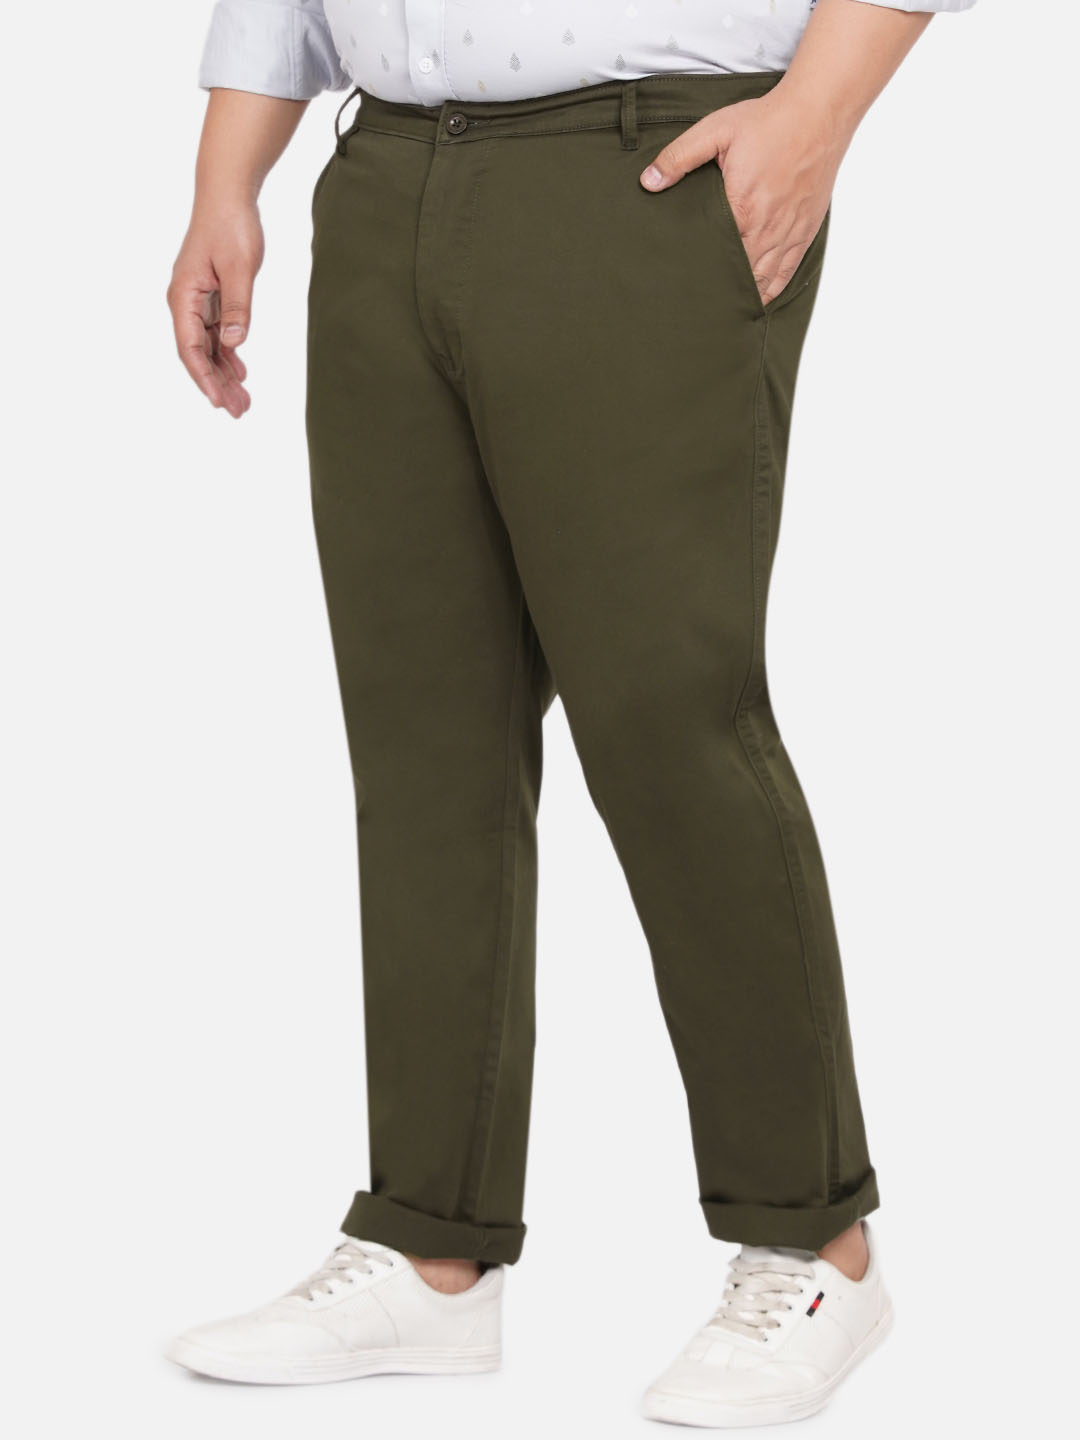 bottomwear/trousers/JPTR2190/jptr2190-4.jpg